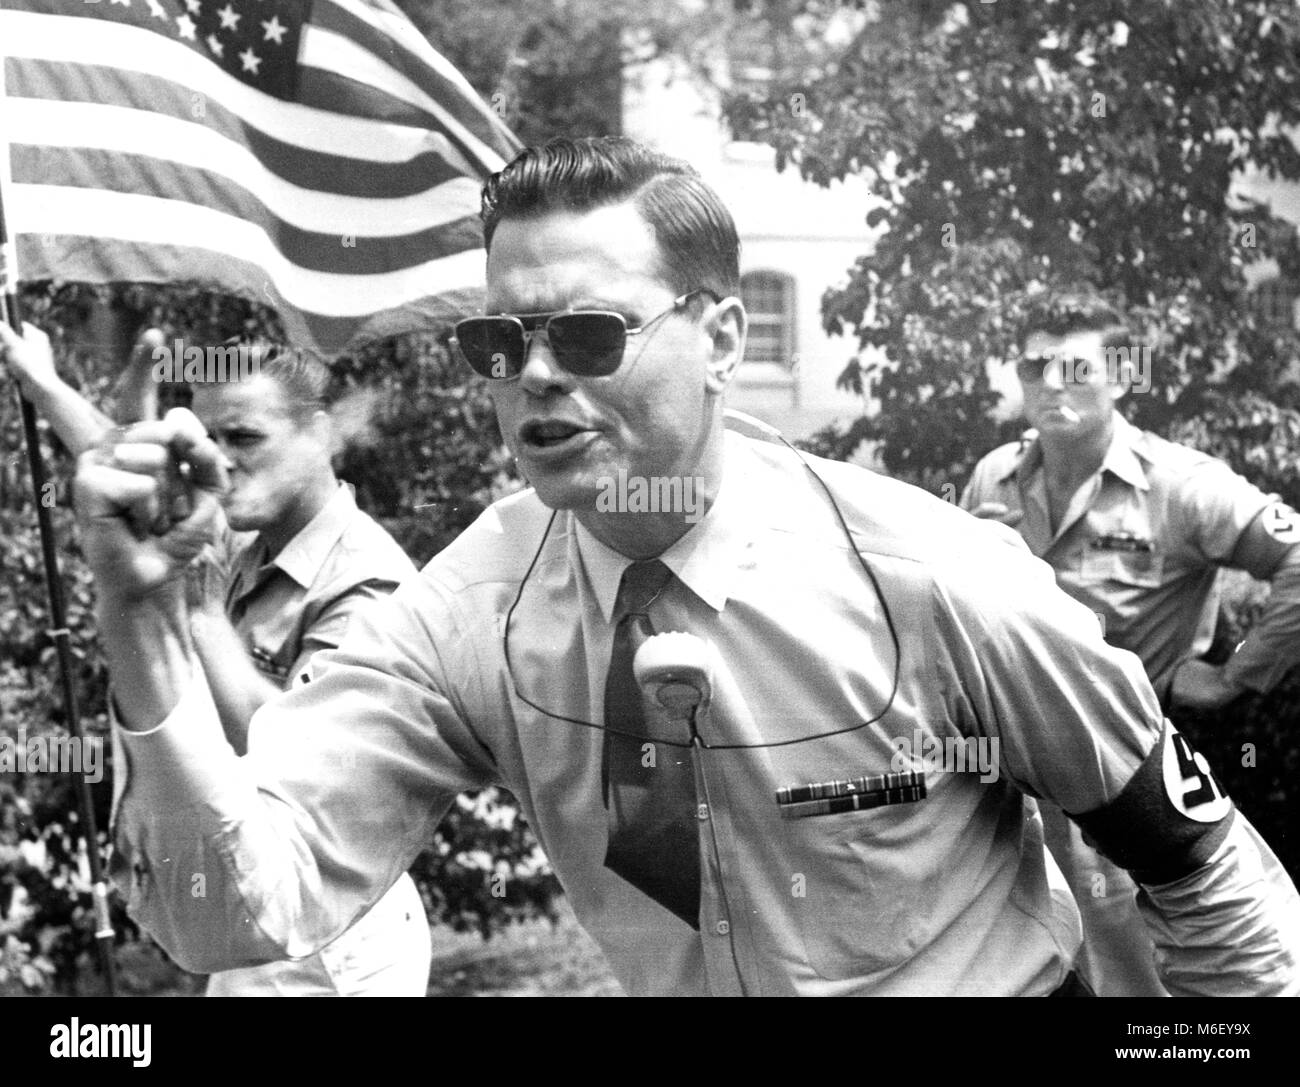 George Lincoln Rockwell, leader du Parti nazi américain, livrant un discours pro-nazi devant un groupe de disciples portant des brassards à croix gammée, Washington, DC, 07/24/1960. Banque D'Images